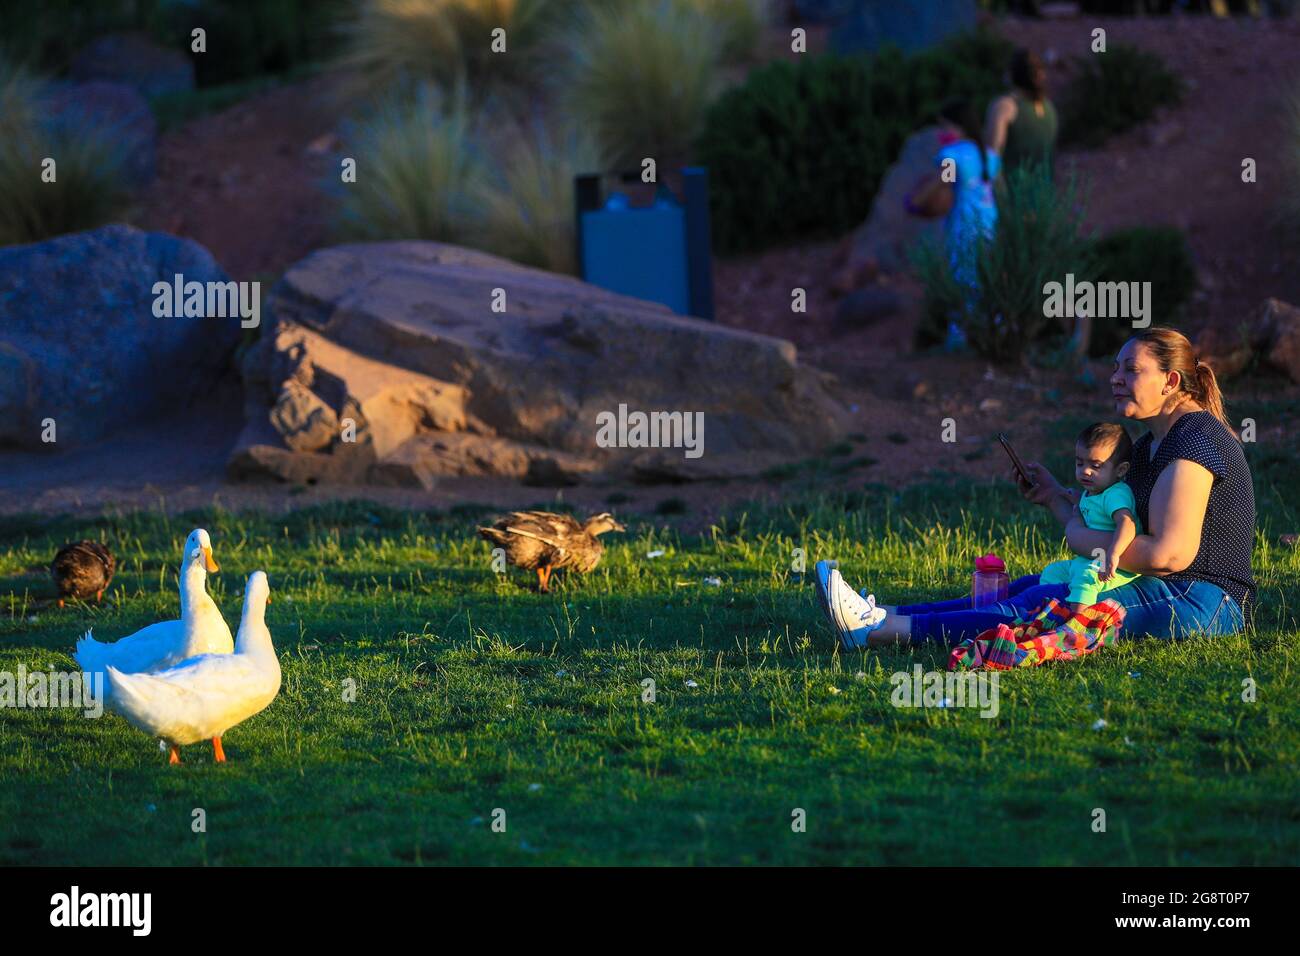 Los patos silvestres coexisten con la gente en el humedal, Pato. (Foto: Luis Gutiérrez / NortePhoto.com) patos de vida silvestre conviven con personas en humed Foto de stock